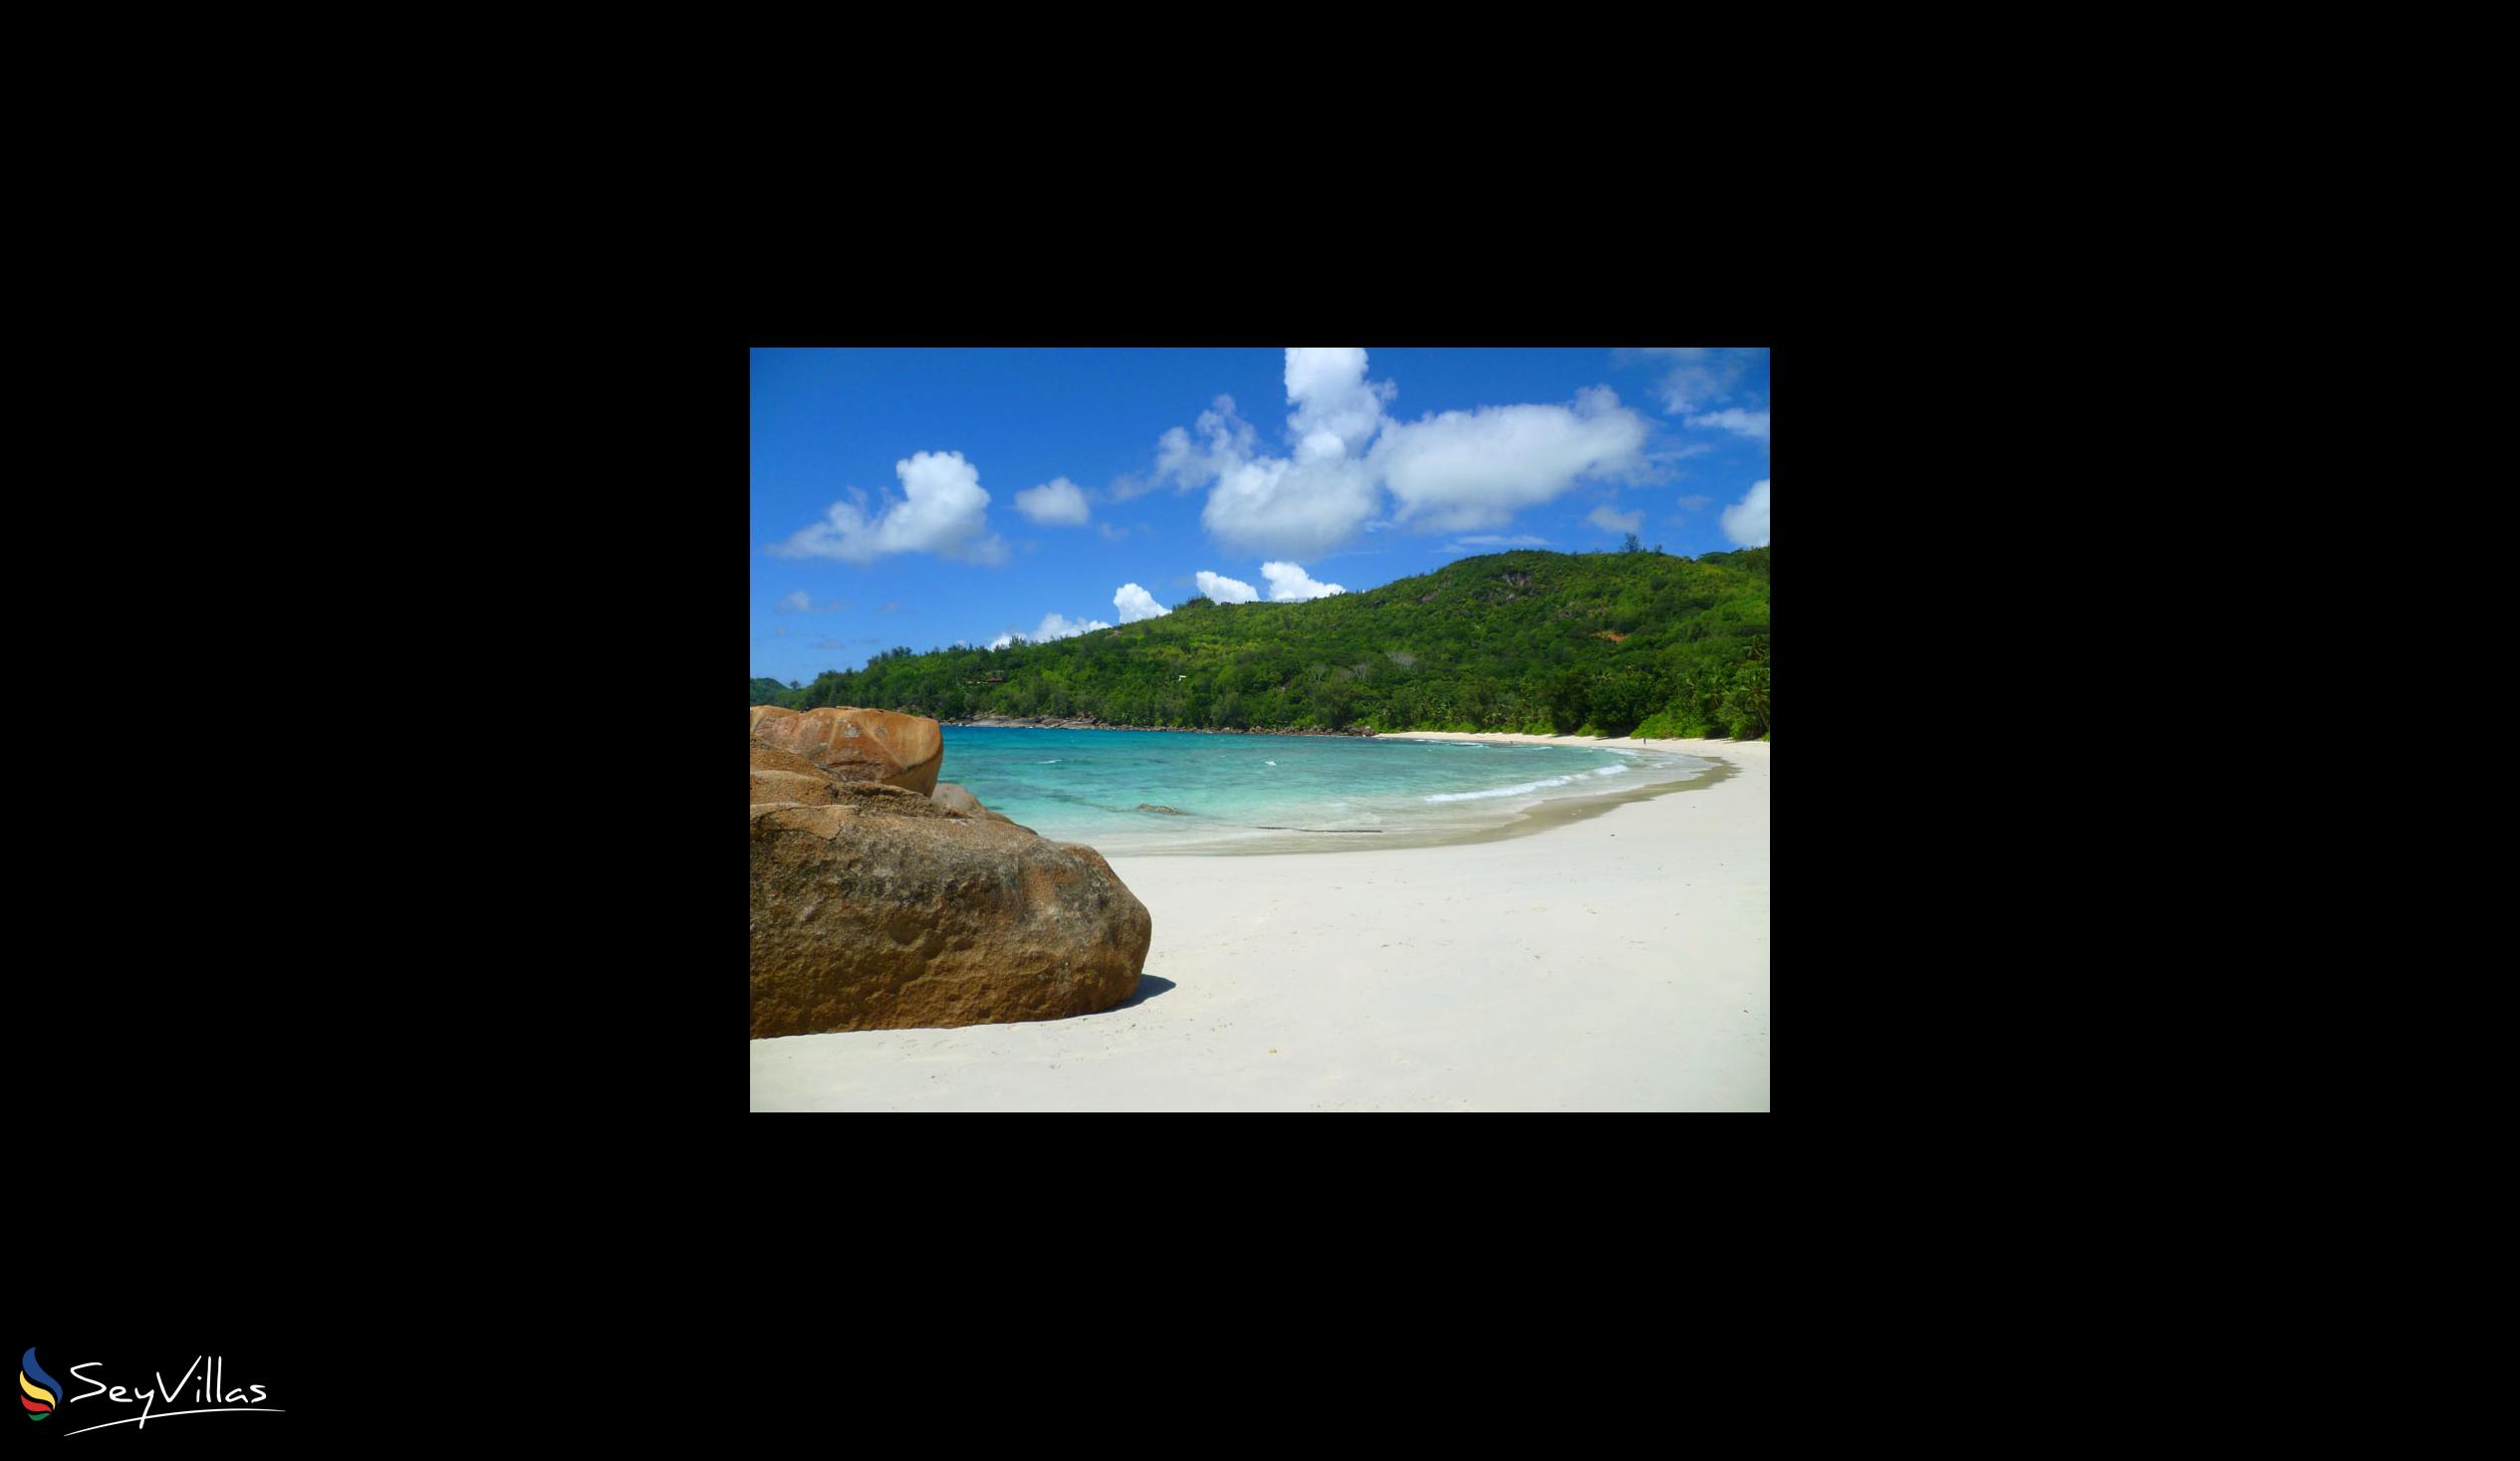 Photo 37: Coté Sud - Beaches - Mahé (Seychelles)